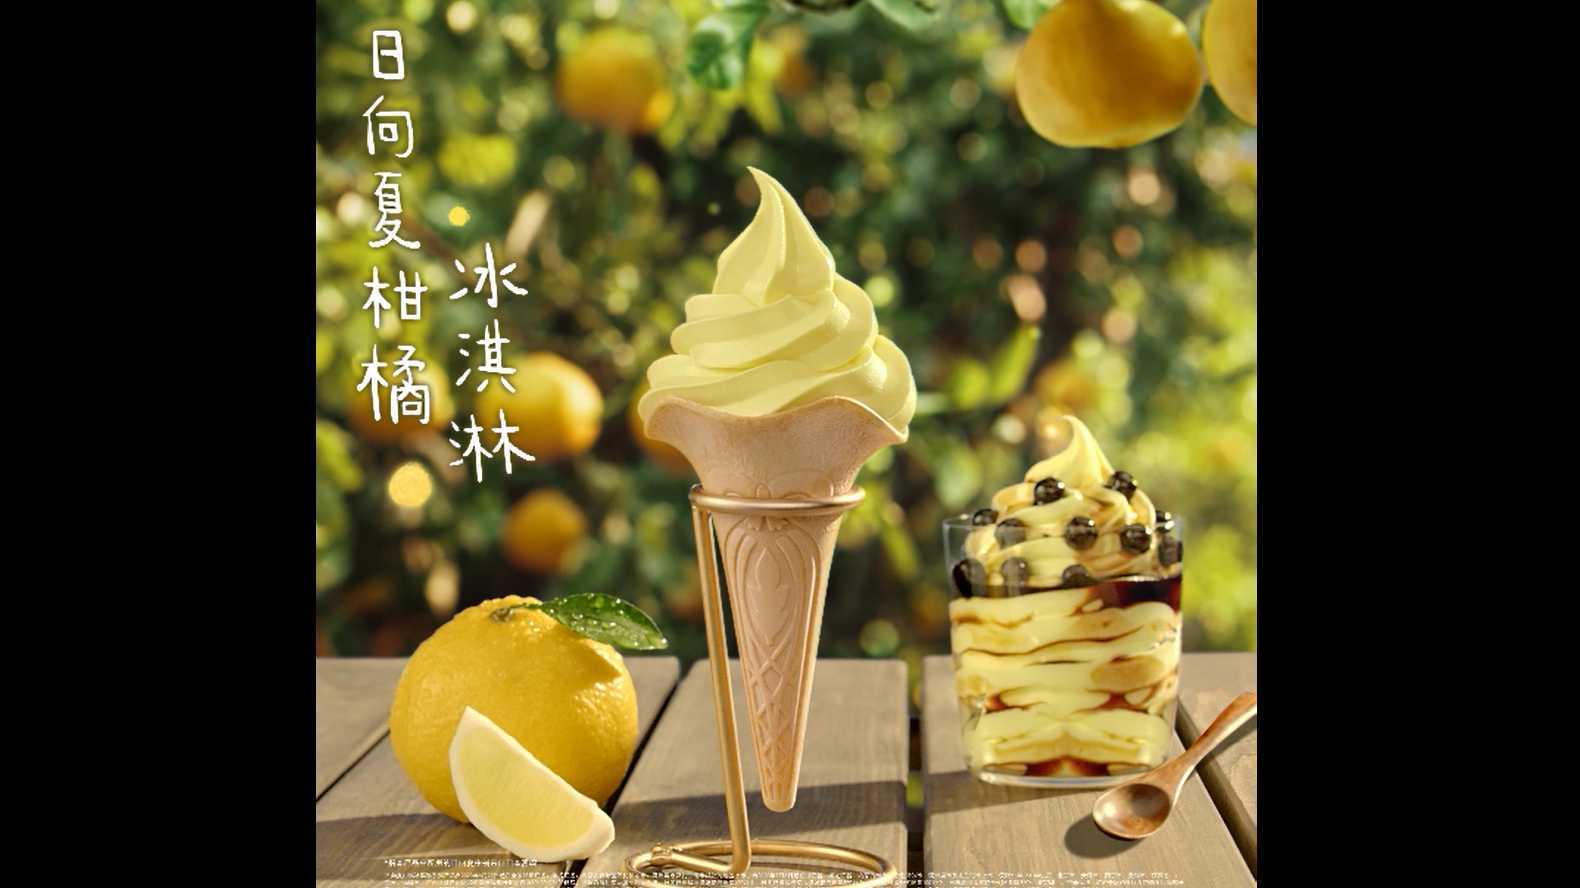 肯德基-日向夏柑橘冰激凌/朱一龙